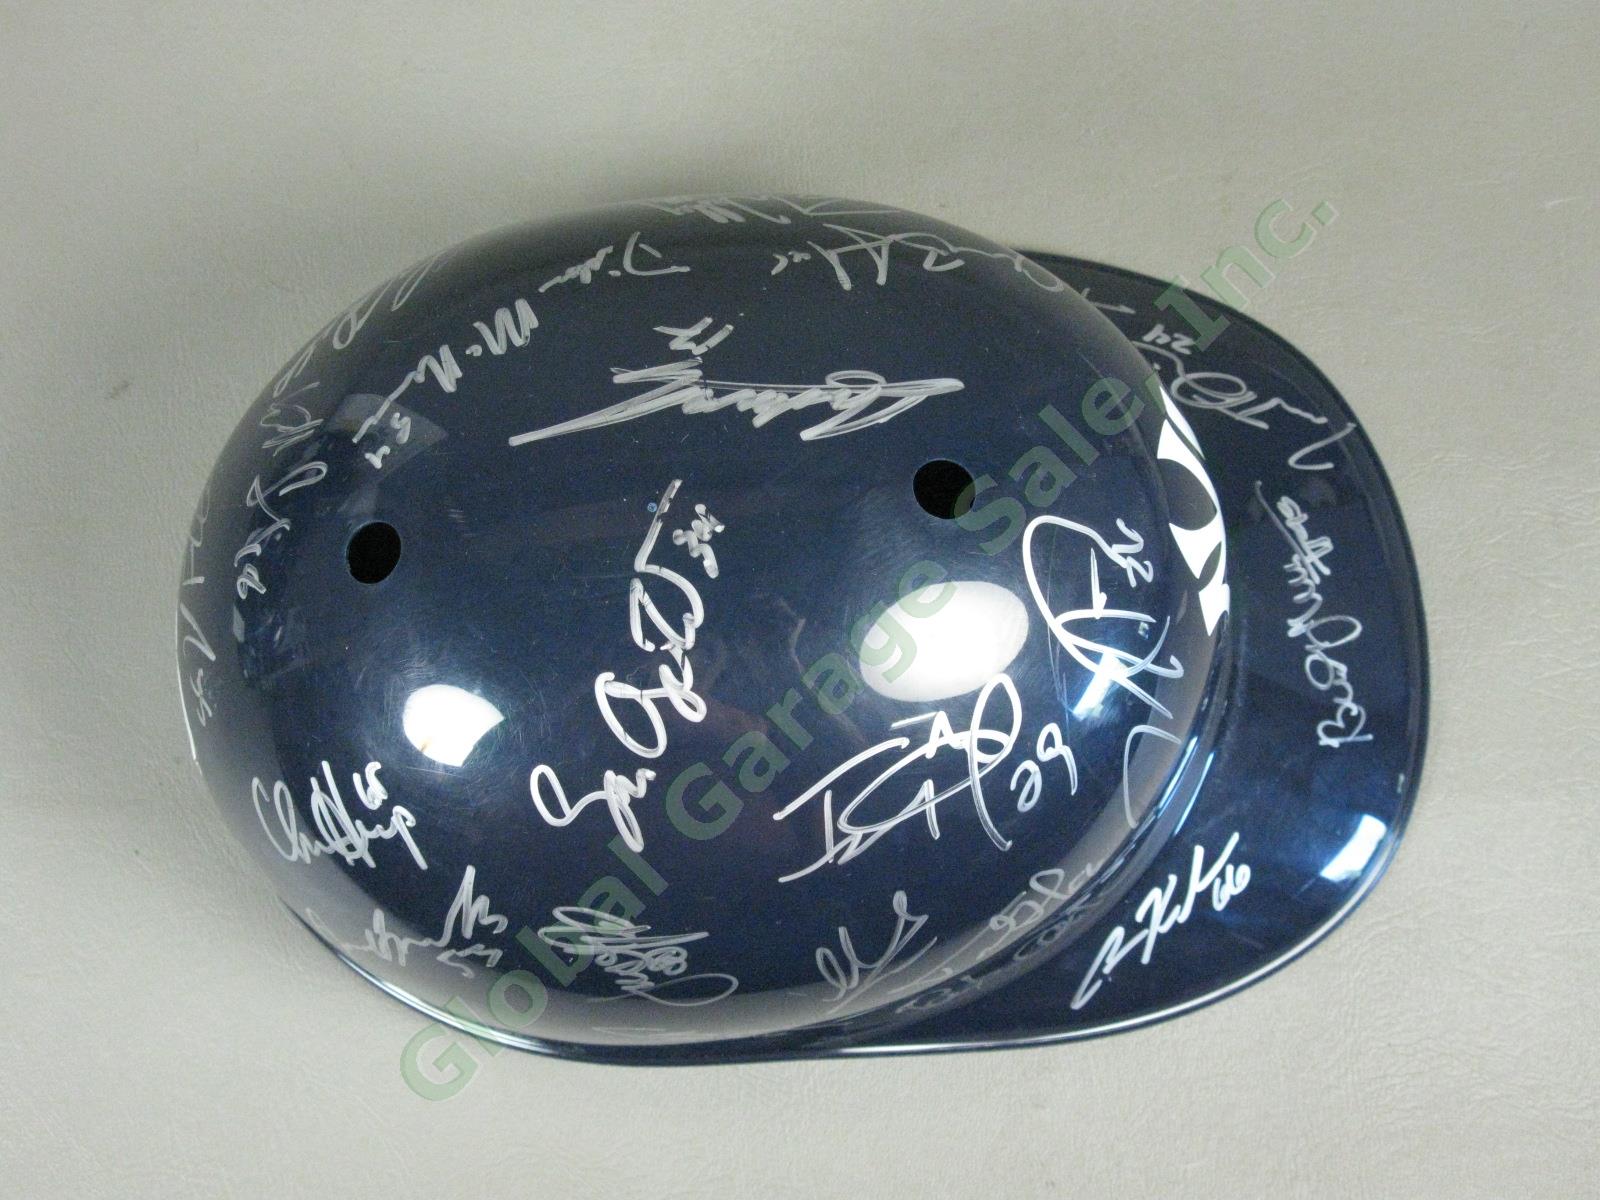 2013 Staten Island Yankees Team Signed Baseball Helmet MiLB MLB NYPL New York NR 4